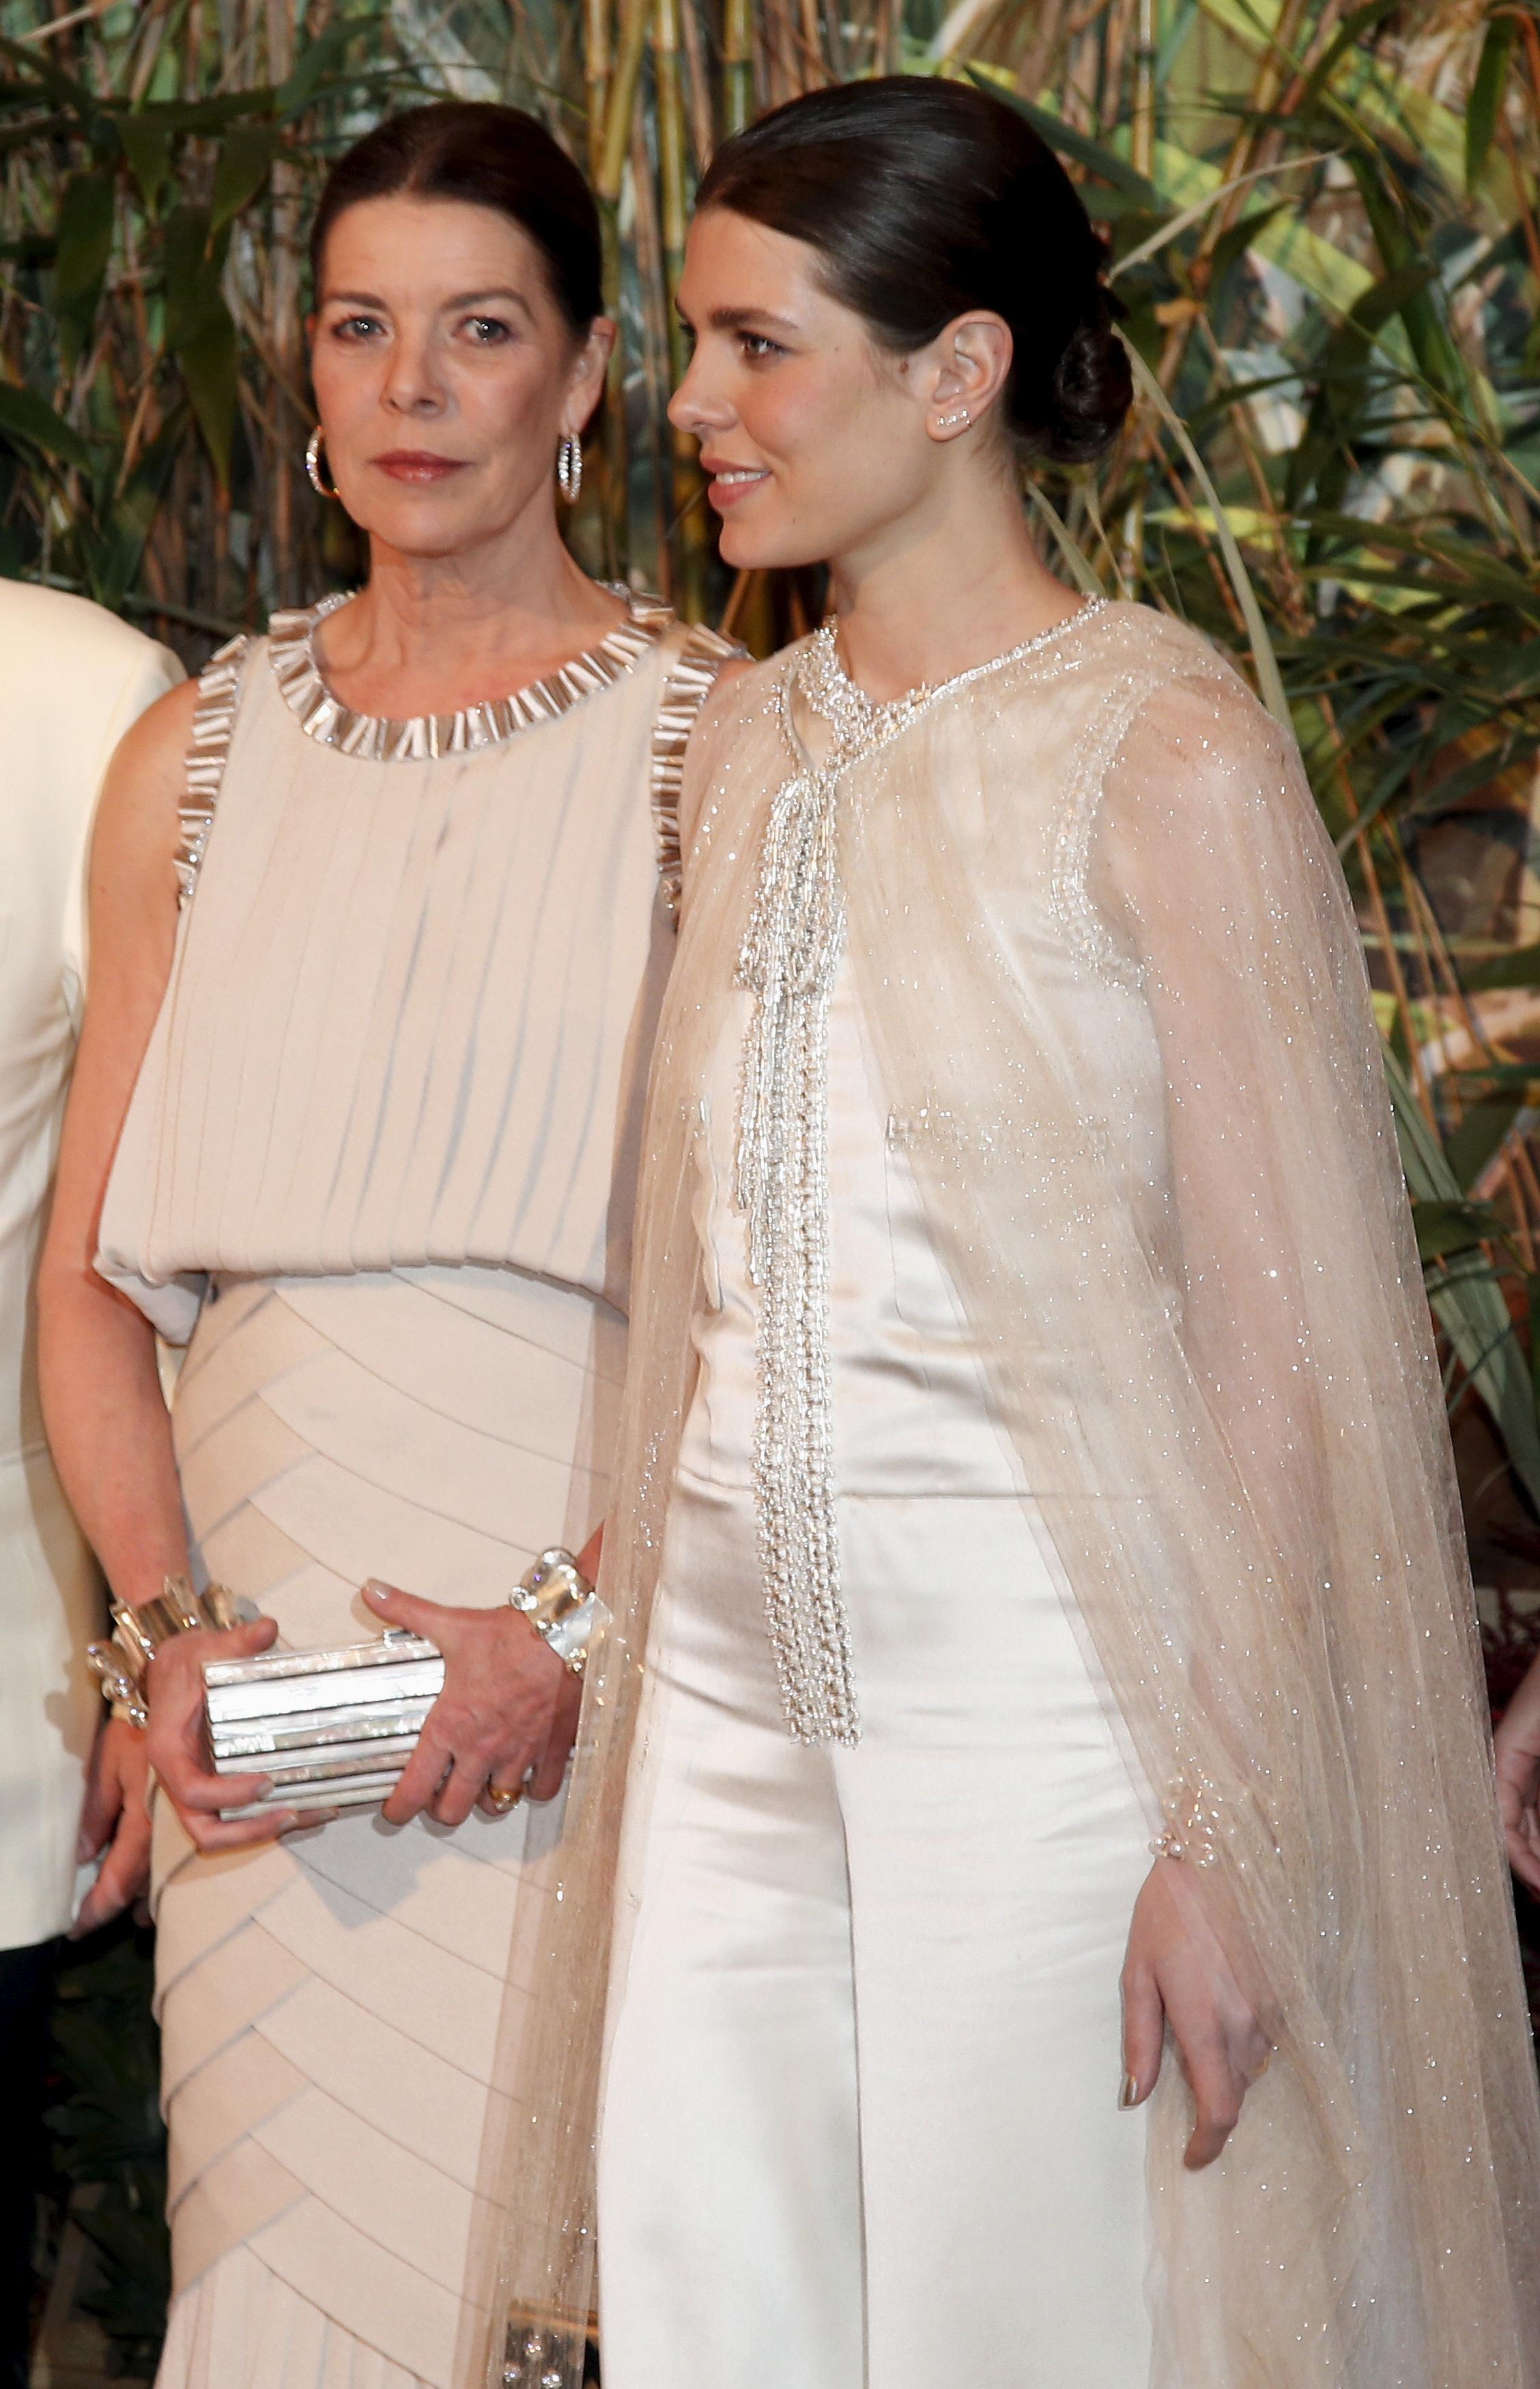 Prinsesse Caroline av Hannover og Charlotte på ball i Monaco i 2016. Begge i kreasjoner fra Chanel.